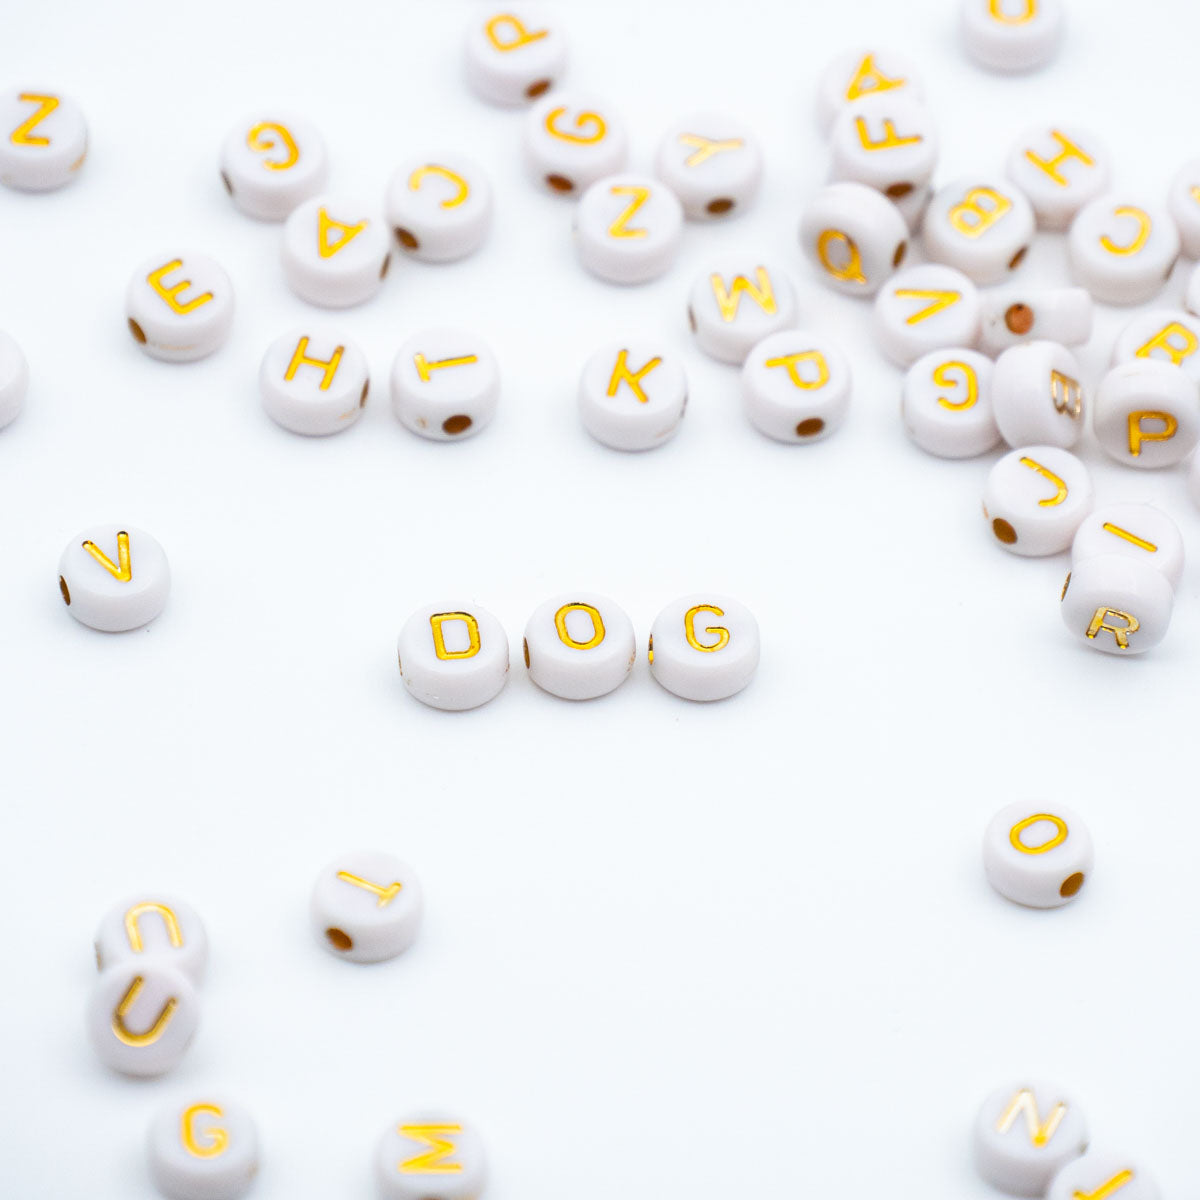 Dog Necklace Duplex - Lavender (EM Ceramic × Amber)